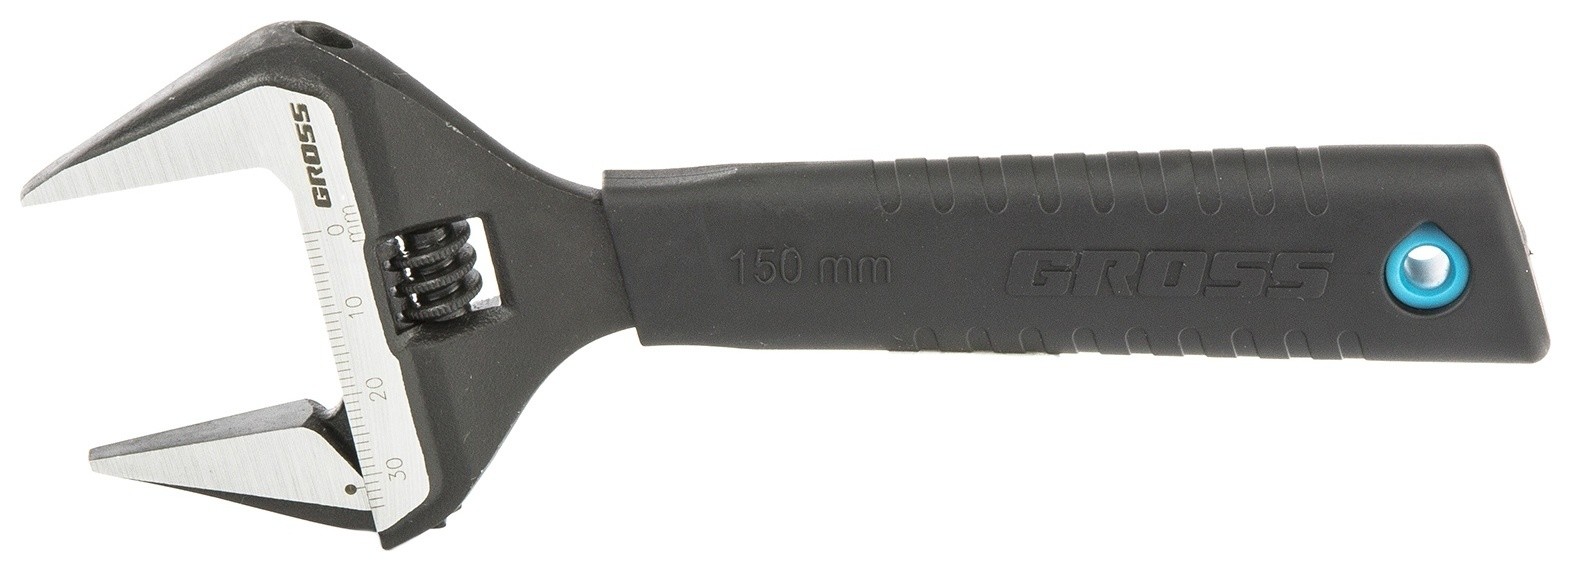 Ключ разводной, 150 мм, Crv, тонкие губки, защитные насадки